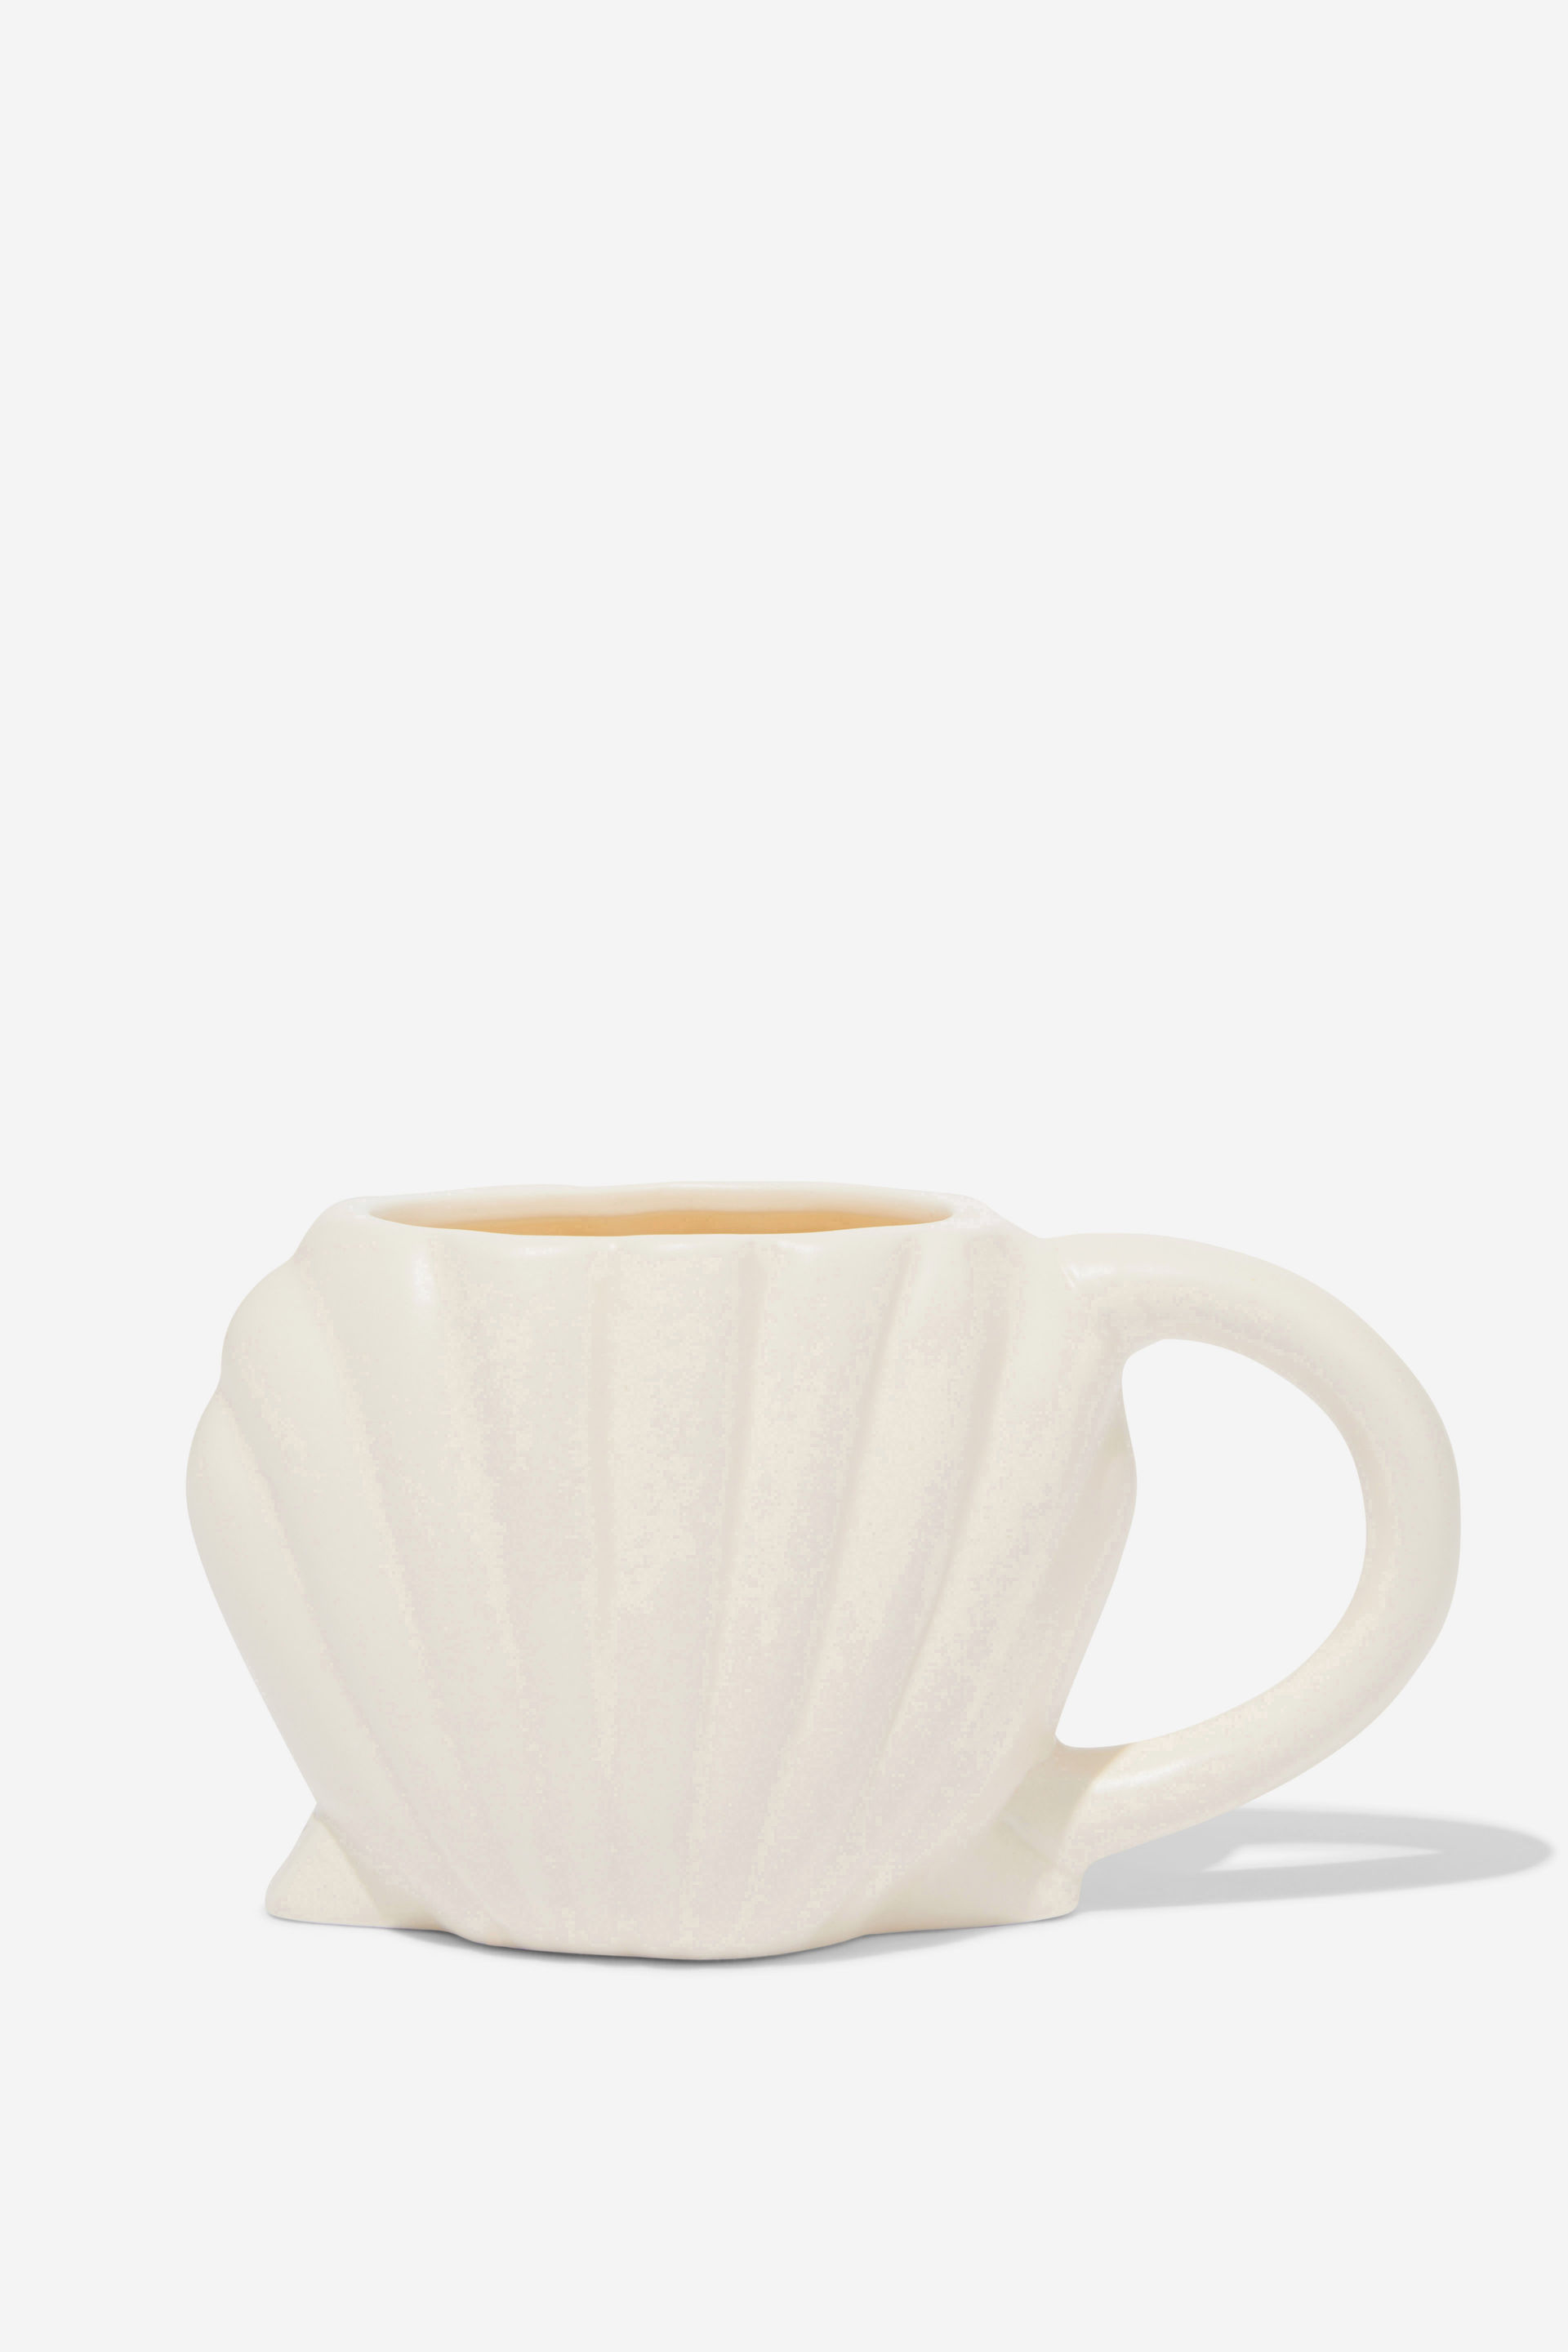 Typo - Shaped Mug - Shell ecru